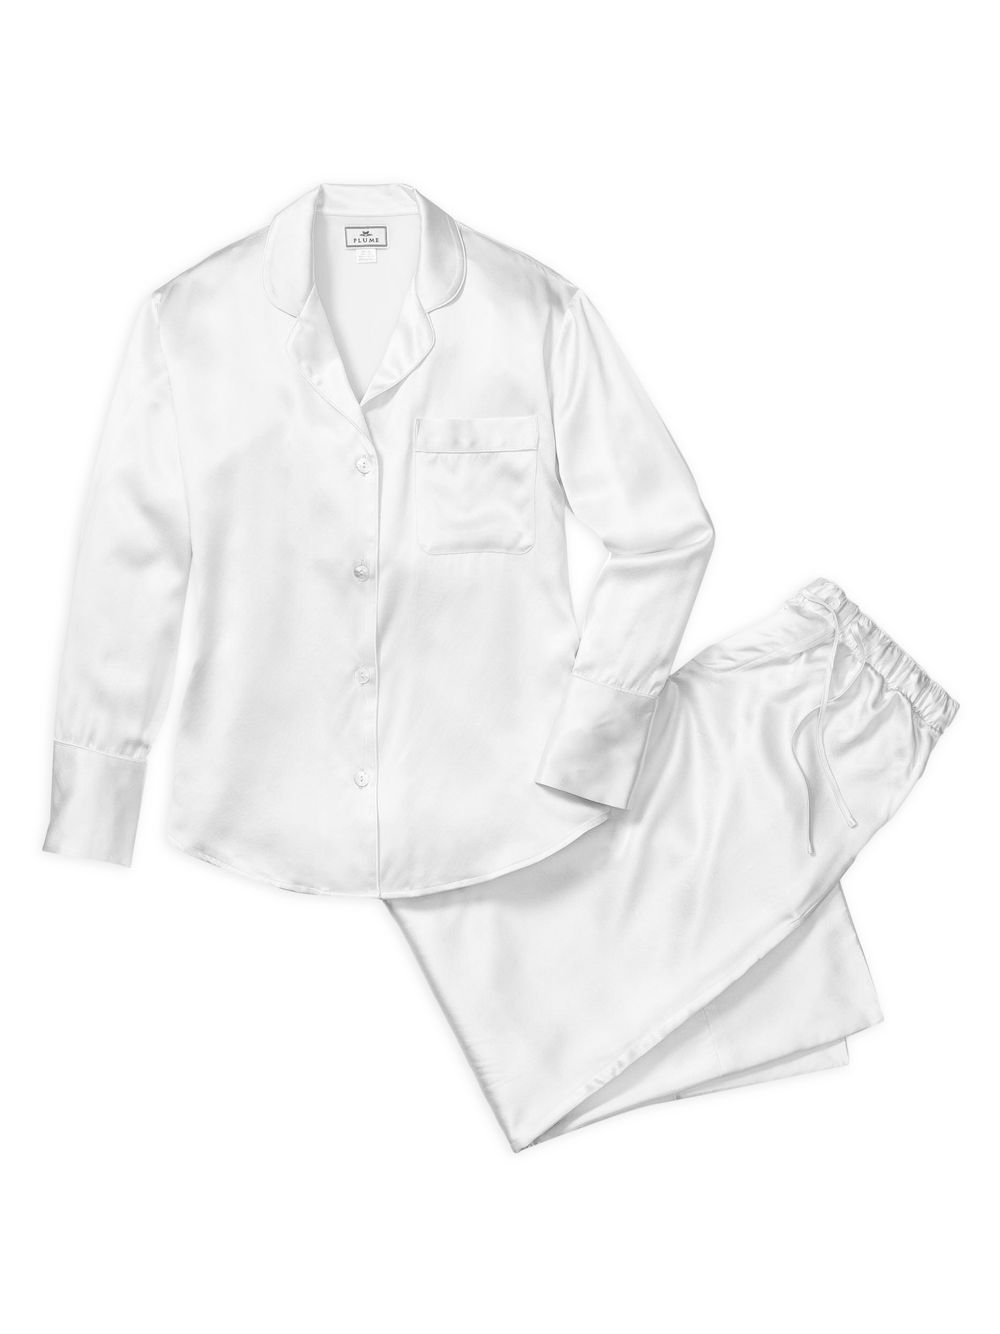 Шелковый пижамный комплект Petite Plume, белый шелковый халат лебединое озеро petite plume черный